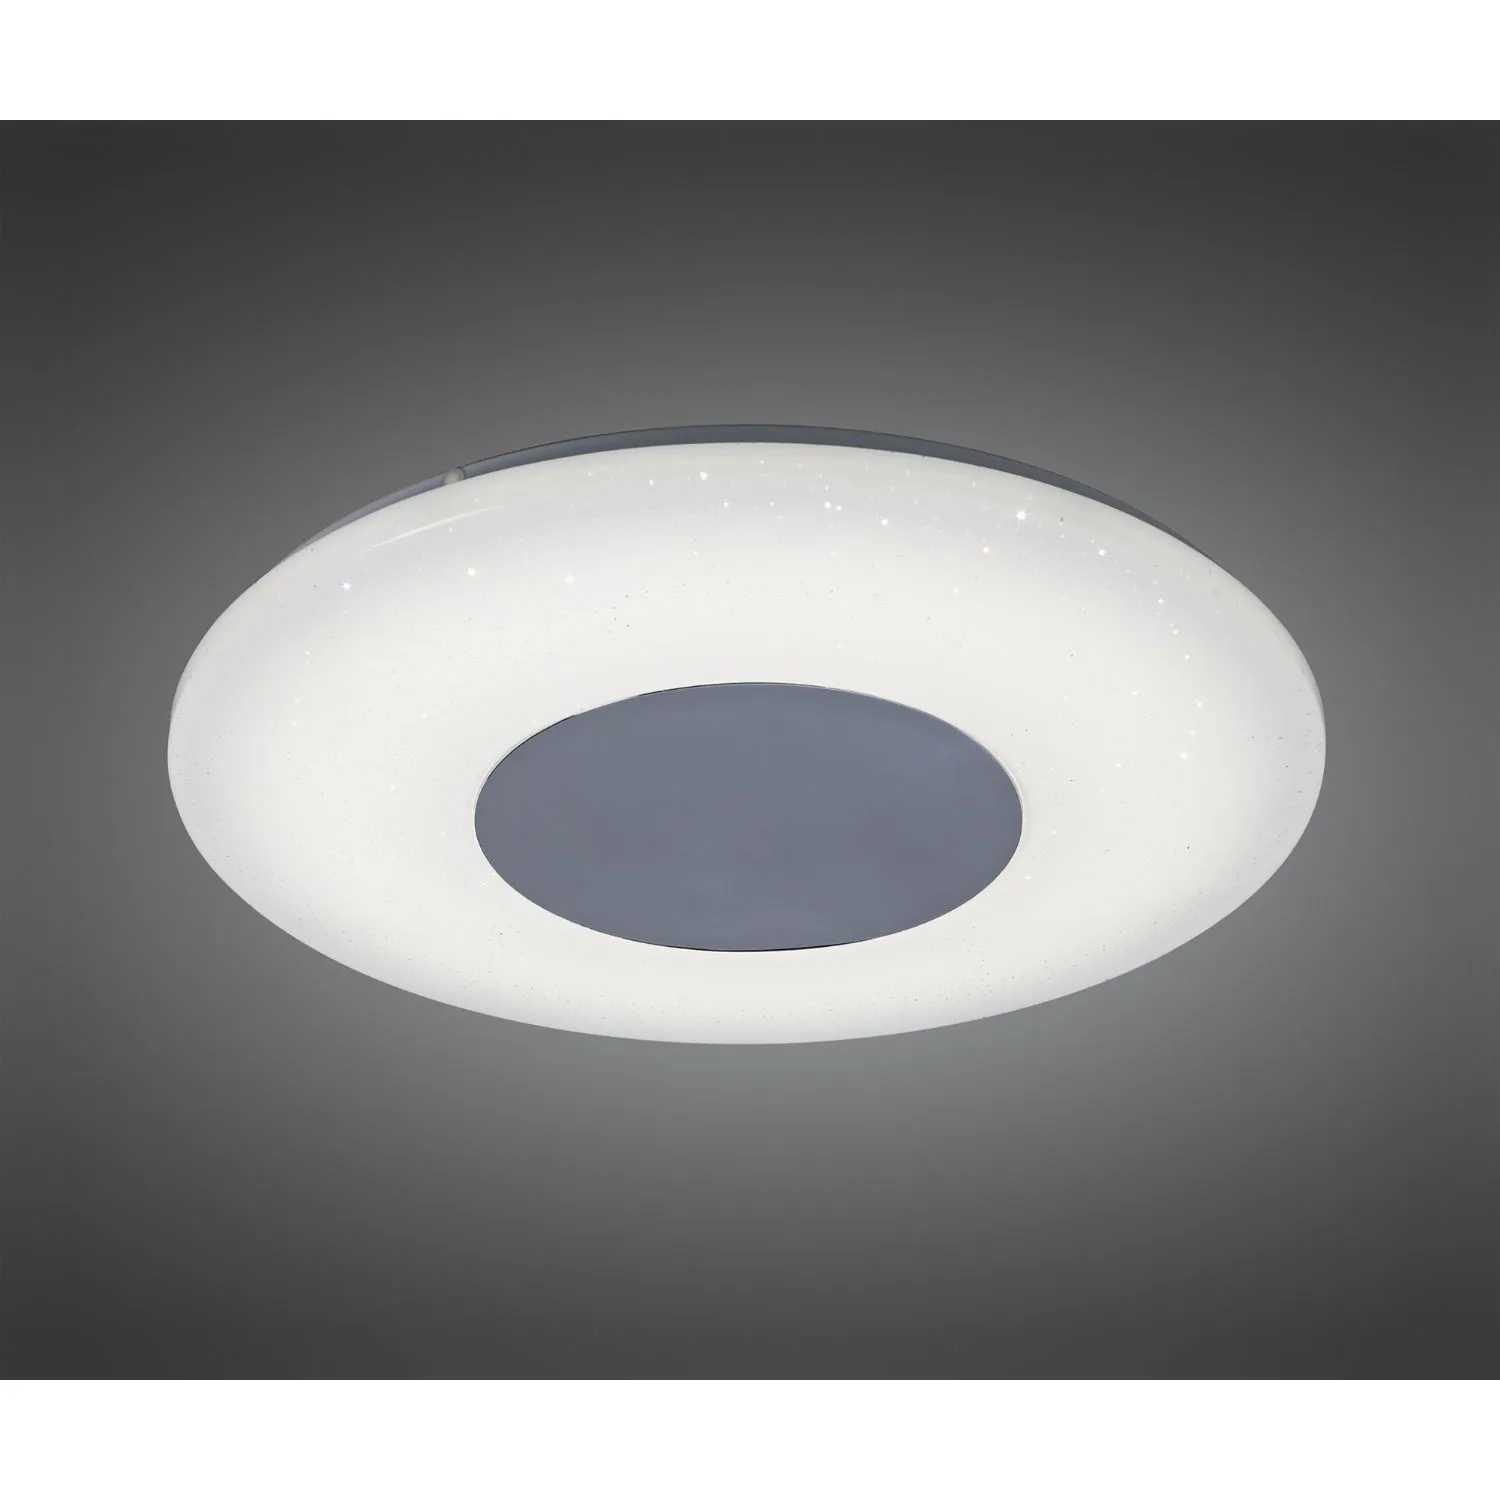 Chrome White 45cm Round Ceiling Flush Light Remote Control